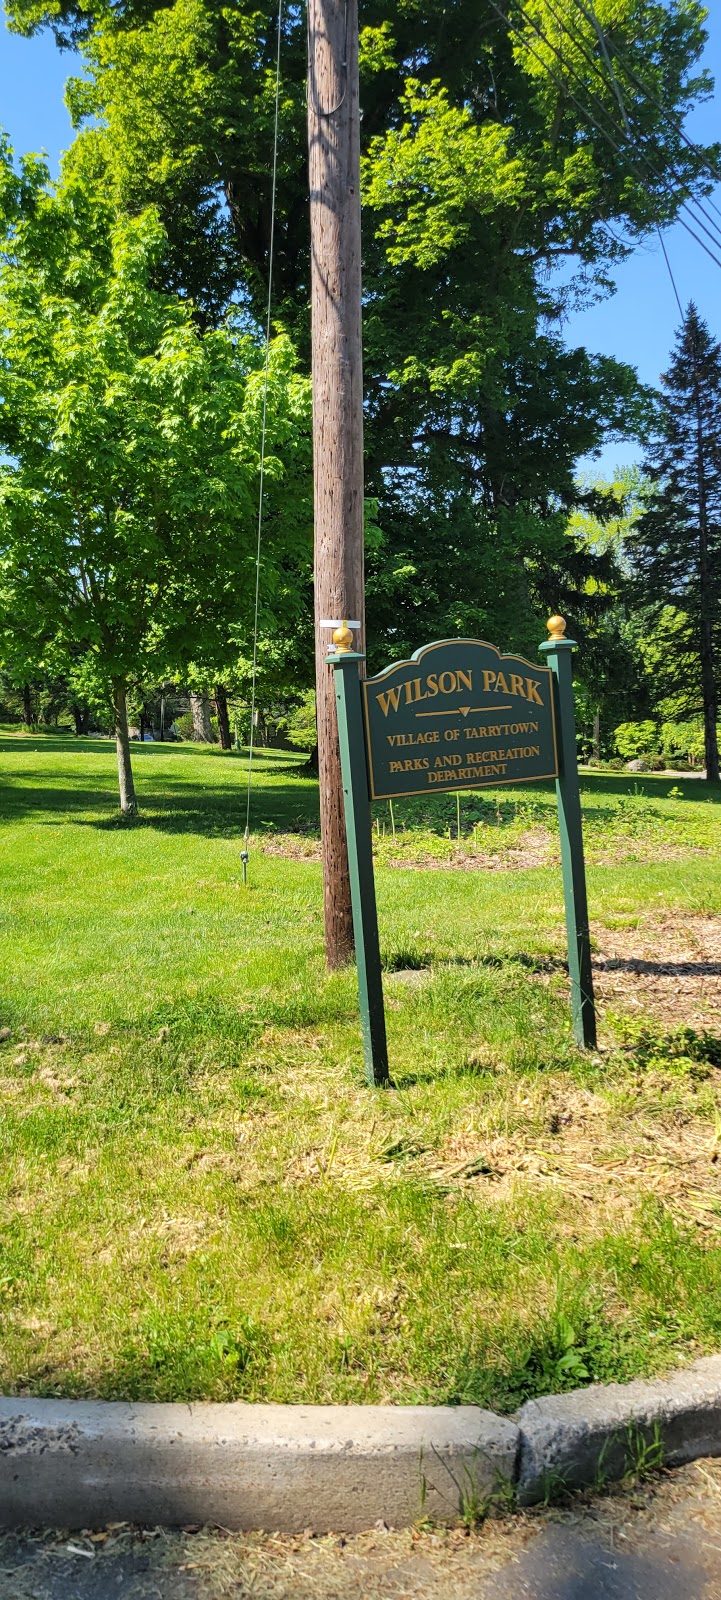 Wilson Park (Public Park) | 143 Wilson Park Dr, Tarrytown, NY 10591 | Phone: (914) 631-8347